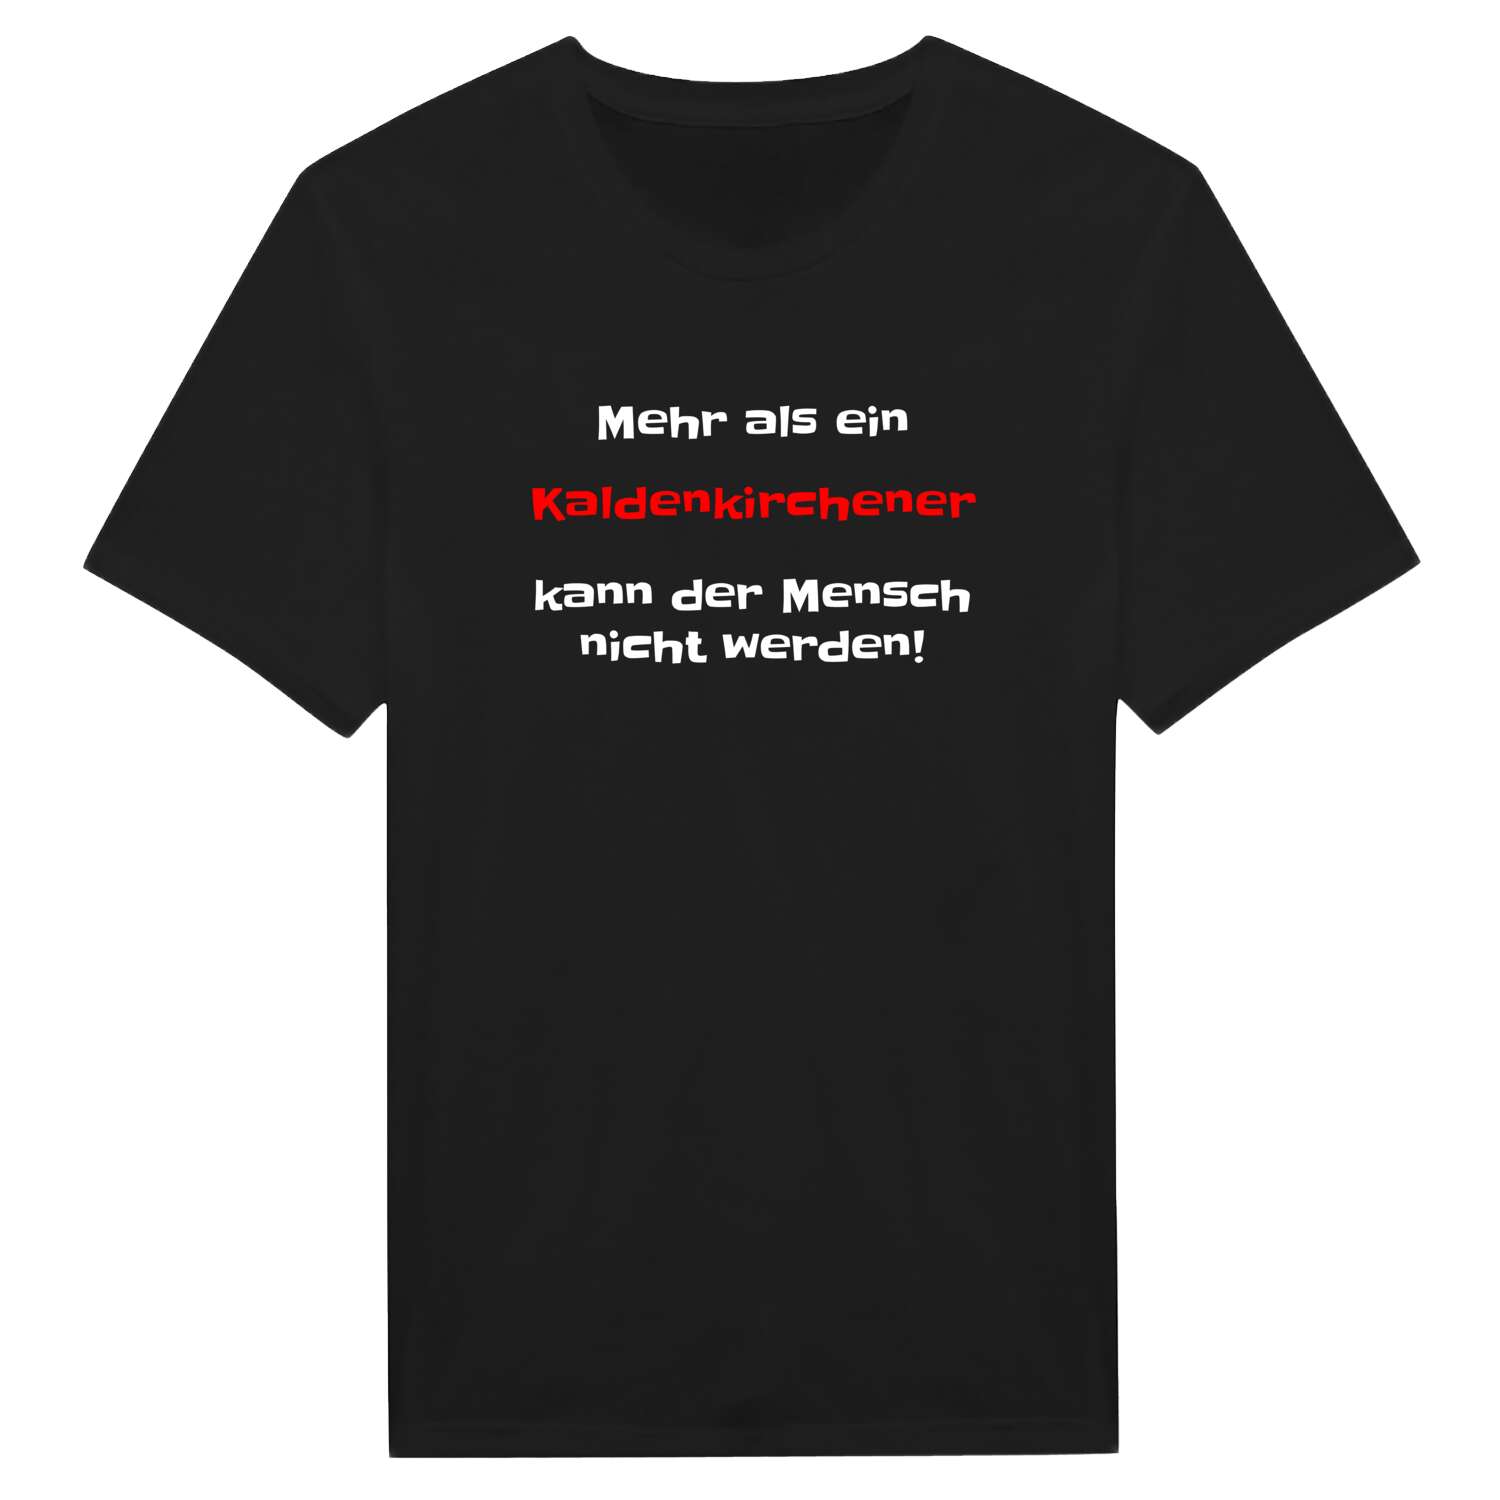 Kaldenkirchen T-Shirt »Mehr als ein«